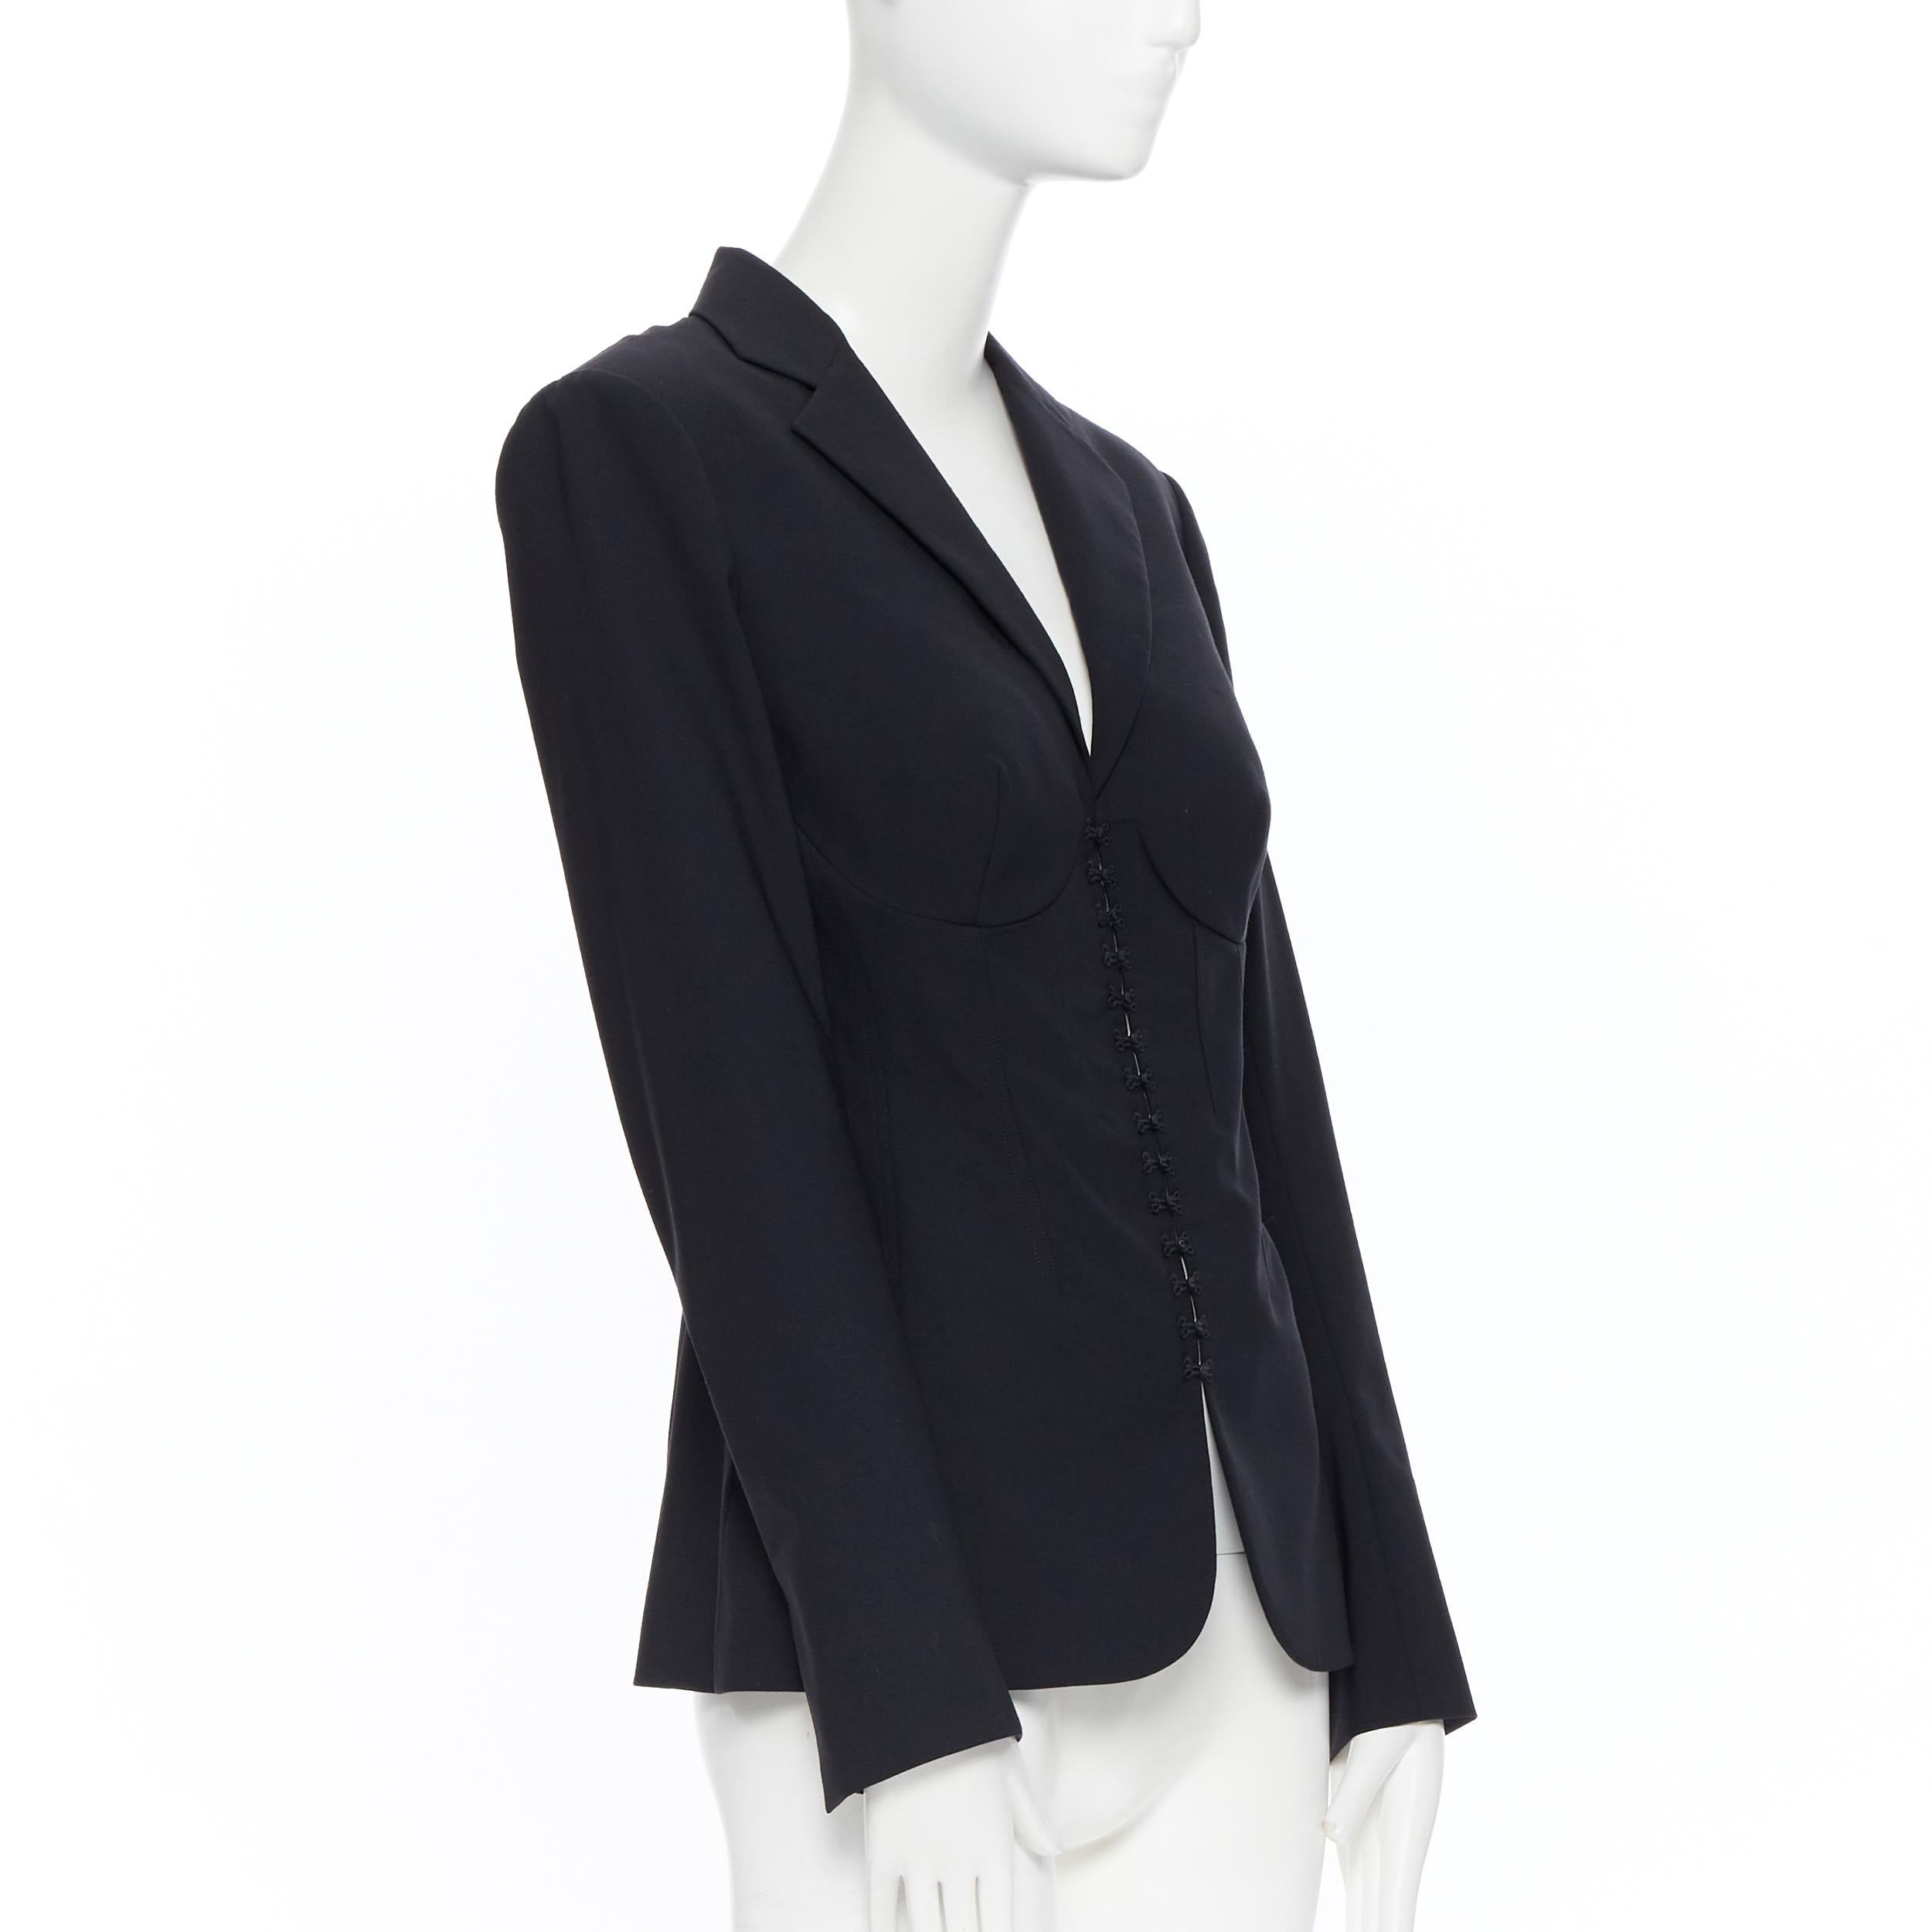 Women's new LA PERLA SS17 Runway Corset Jacket black stretch wool bustier blazer IT42 B